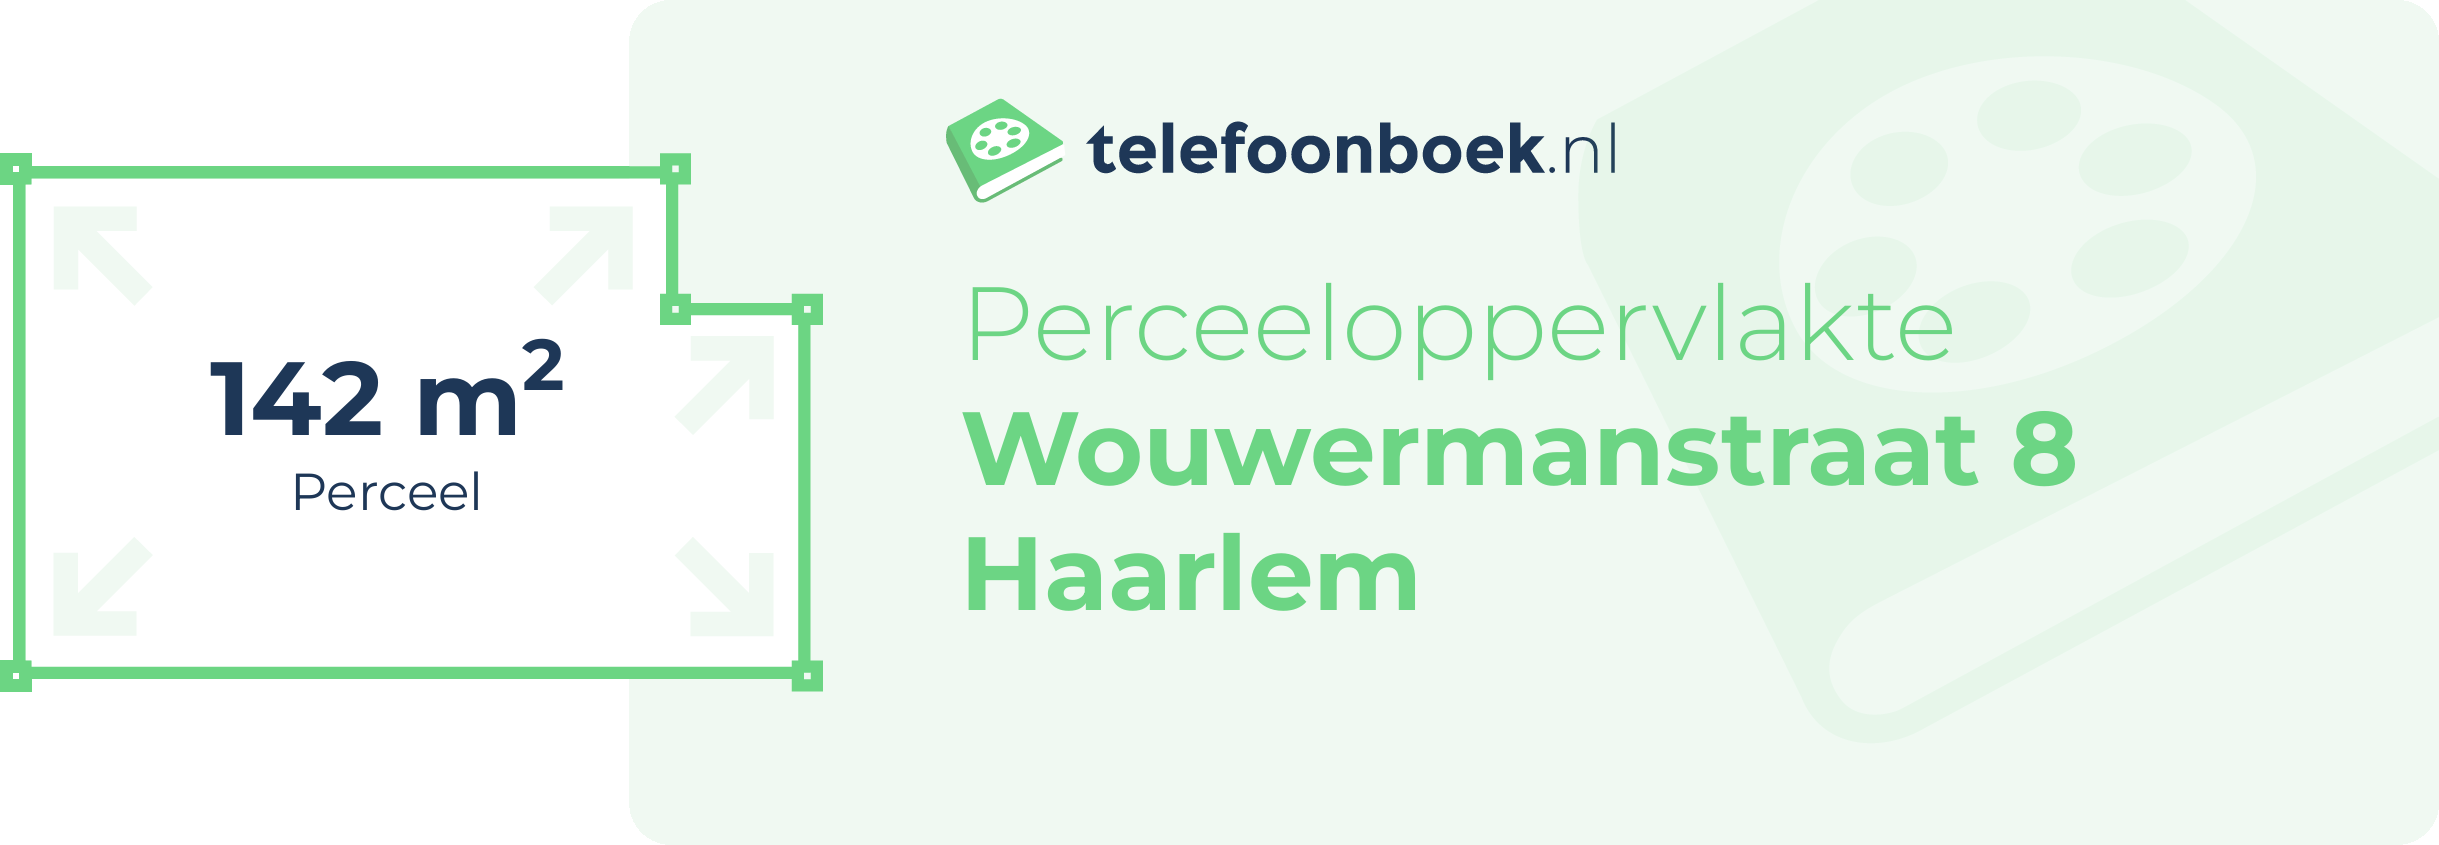 Perceeloppervlakte Wouwermanstraat 8 Haarlem